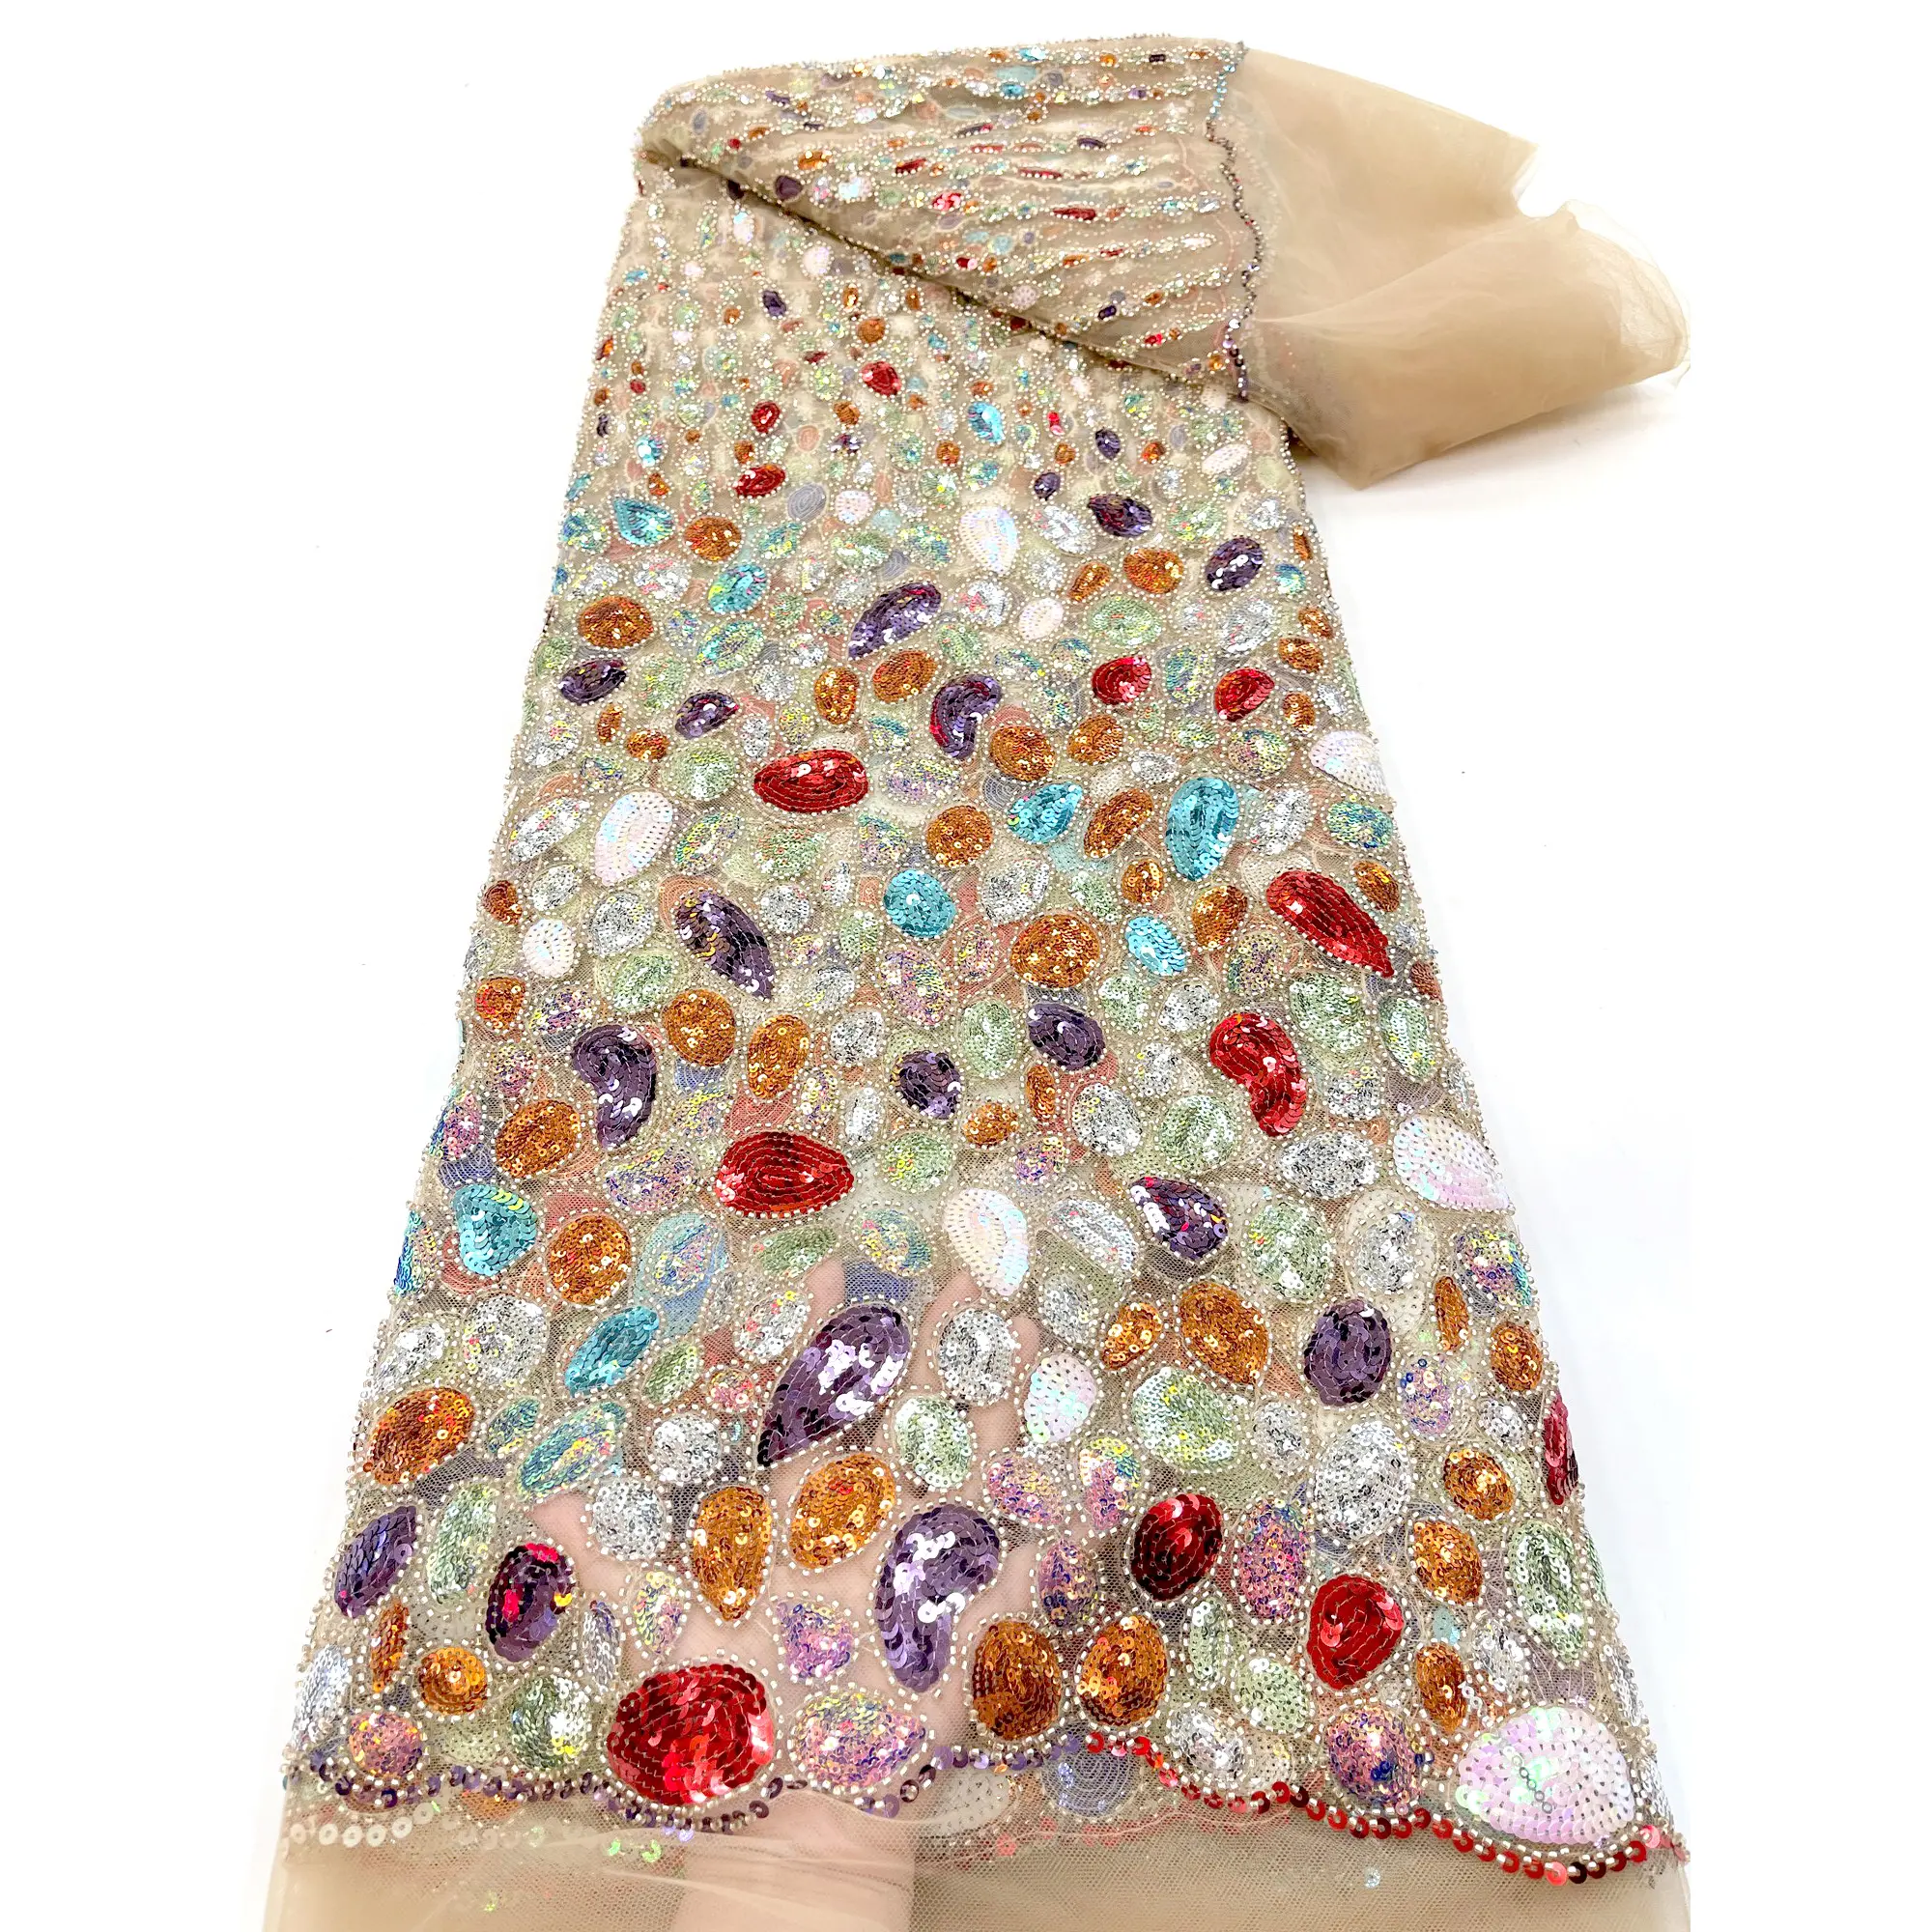 Alta couture lantejoulas cheias coloridas, bordados com miçangas nude tecido fantasia